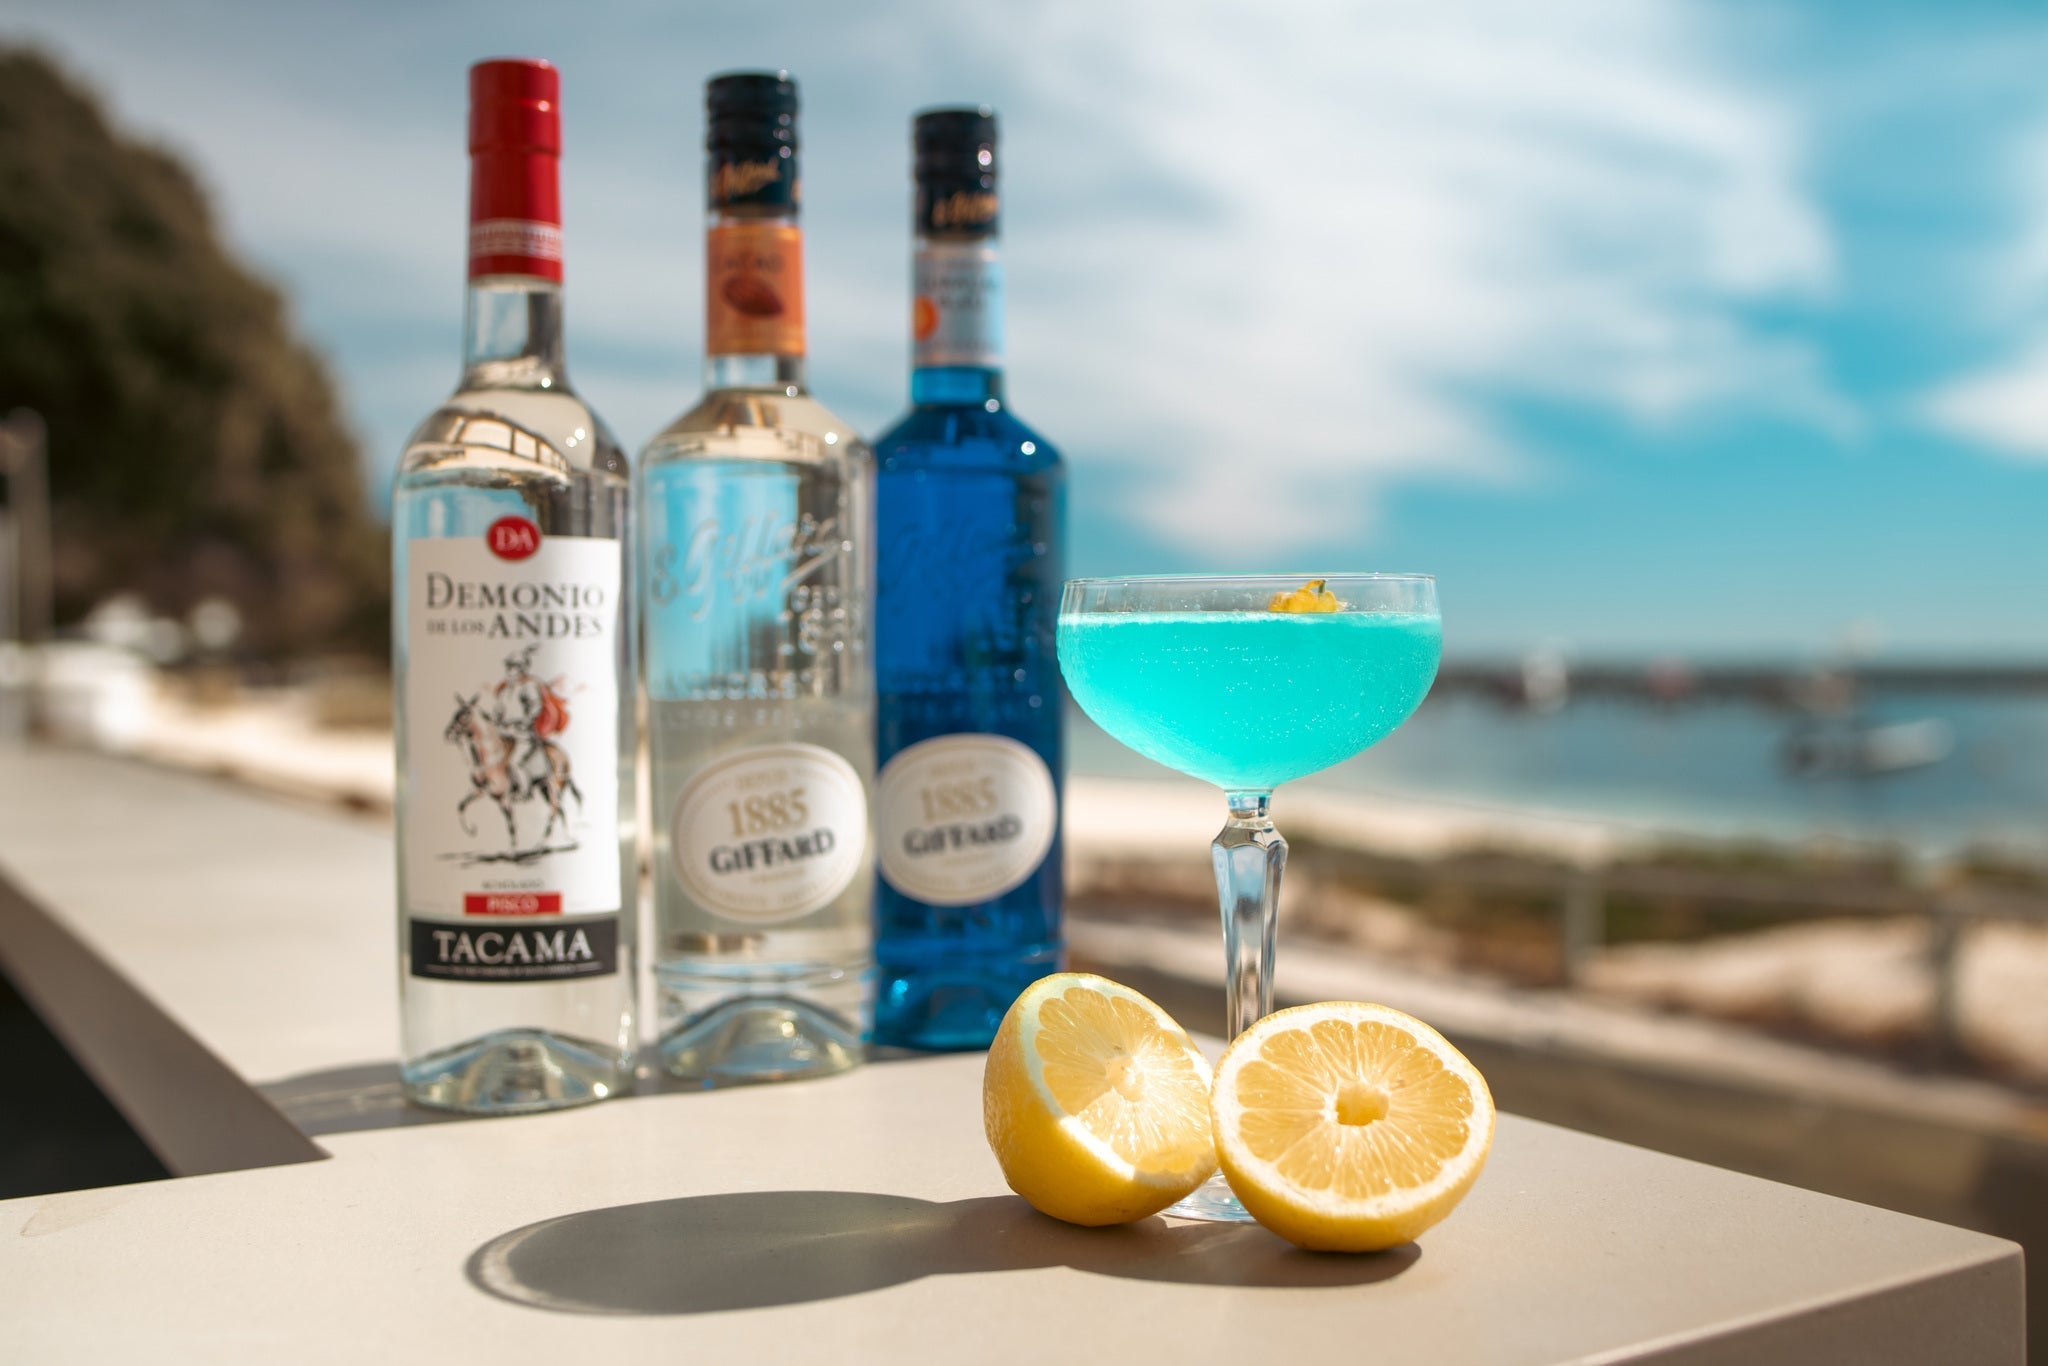 Liqueur Giffard, Curacao Bleu Liqueur, 700 ml Giffard, Curacao Bleu Liqueur  – price, reviews